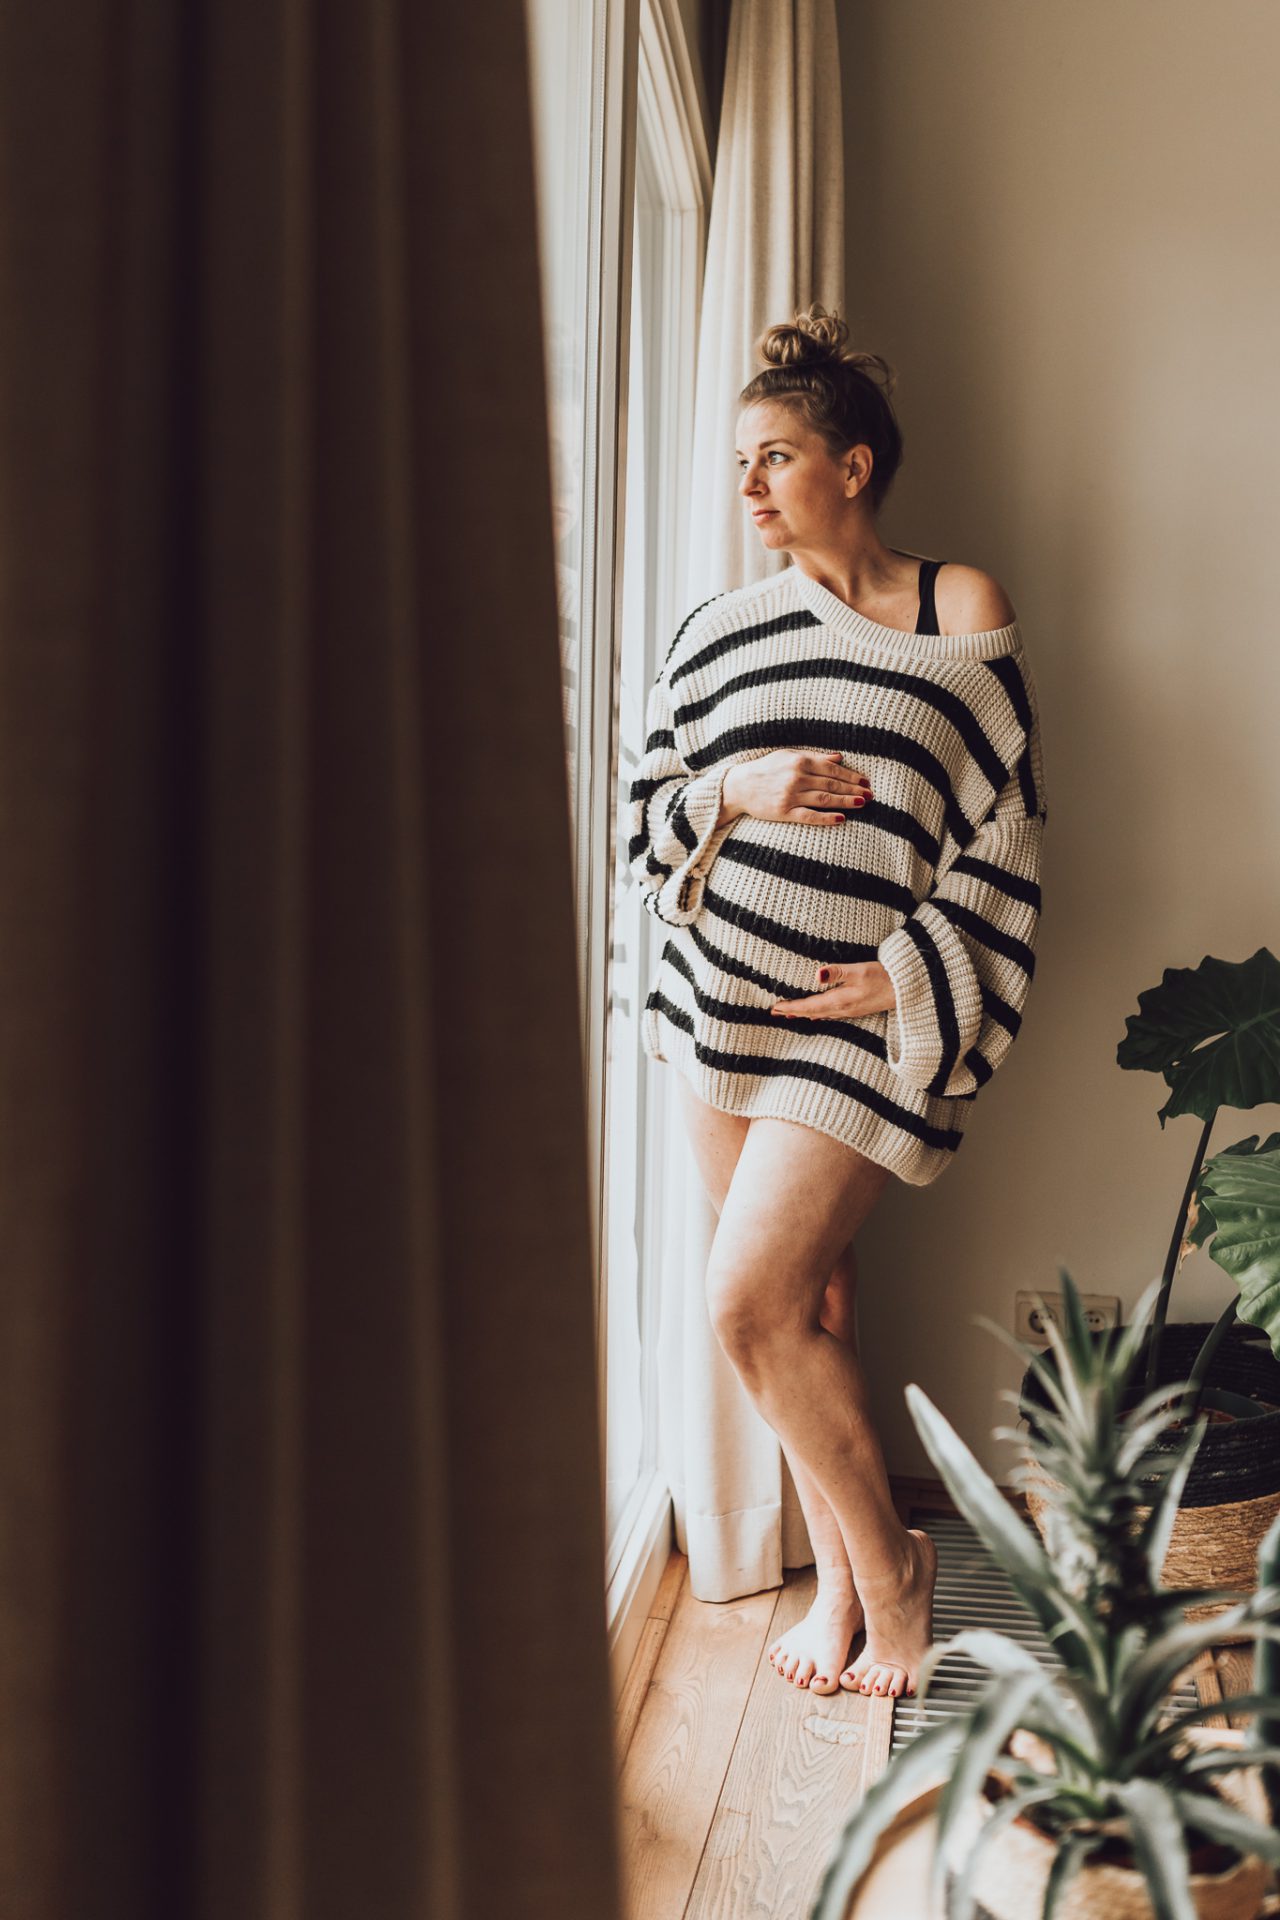 Zwangerschapsfotoshoot door flow photography, zwangere kijkend naar buiten via raam